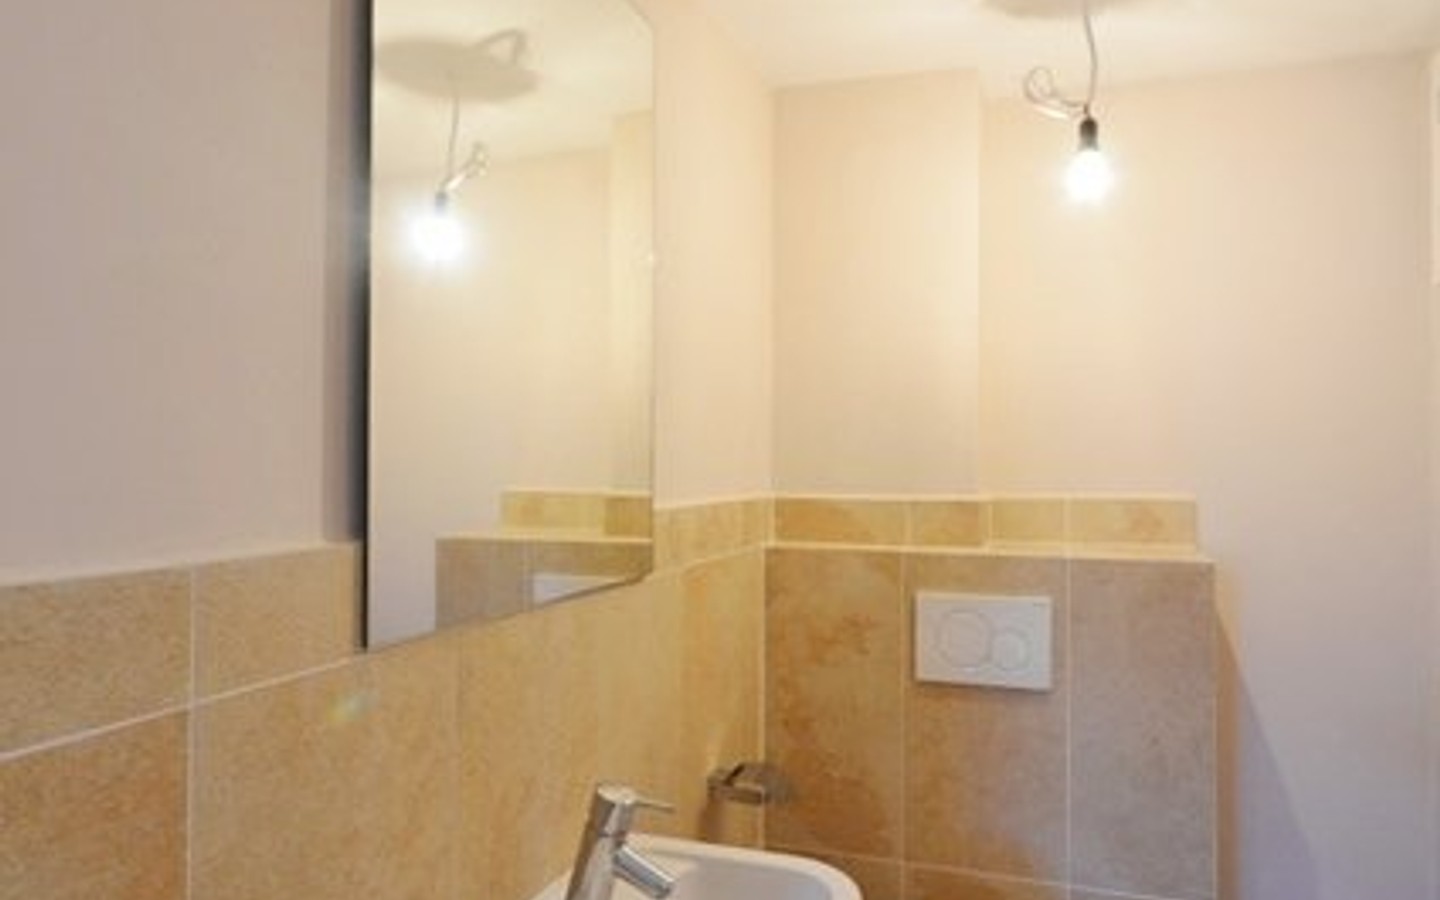 Gäste-WC - Neue Vier Wände - Ideal für Paare oder Alleinlebende.